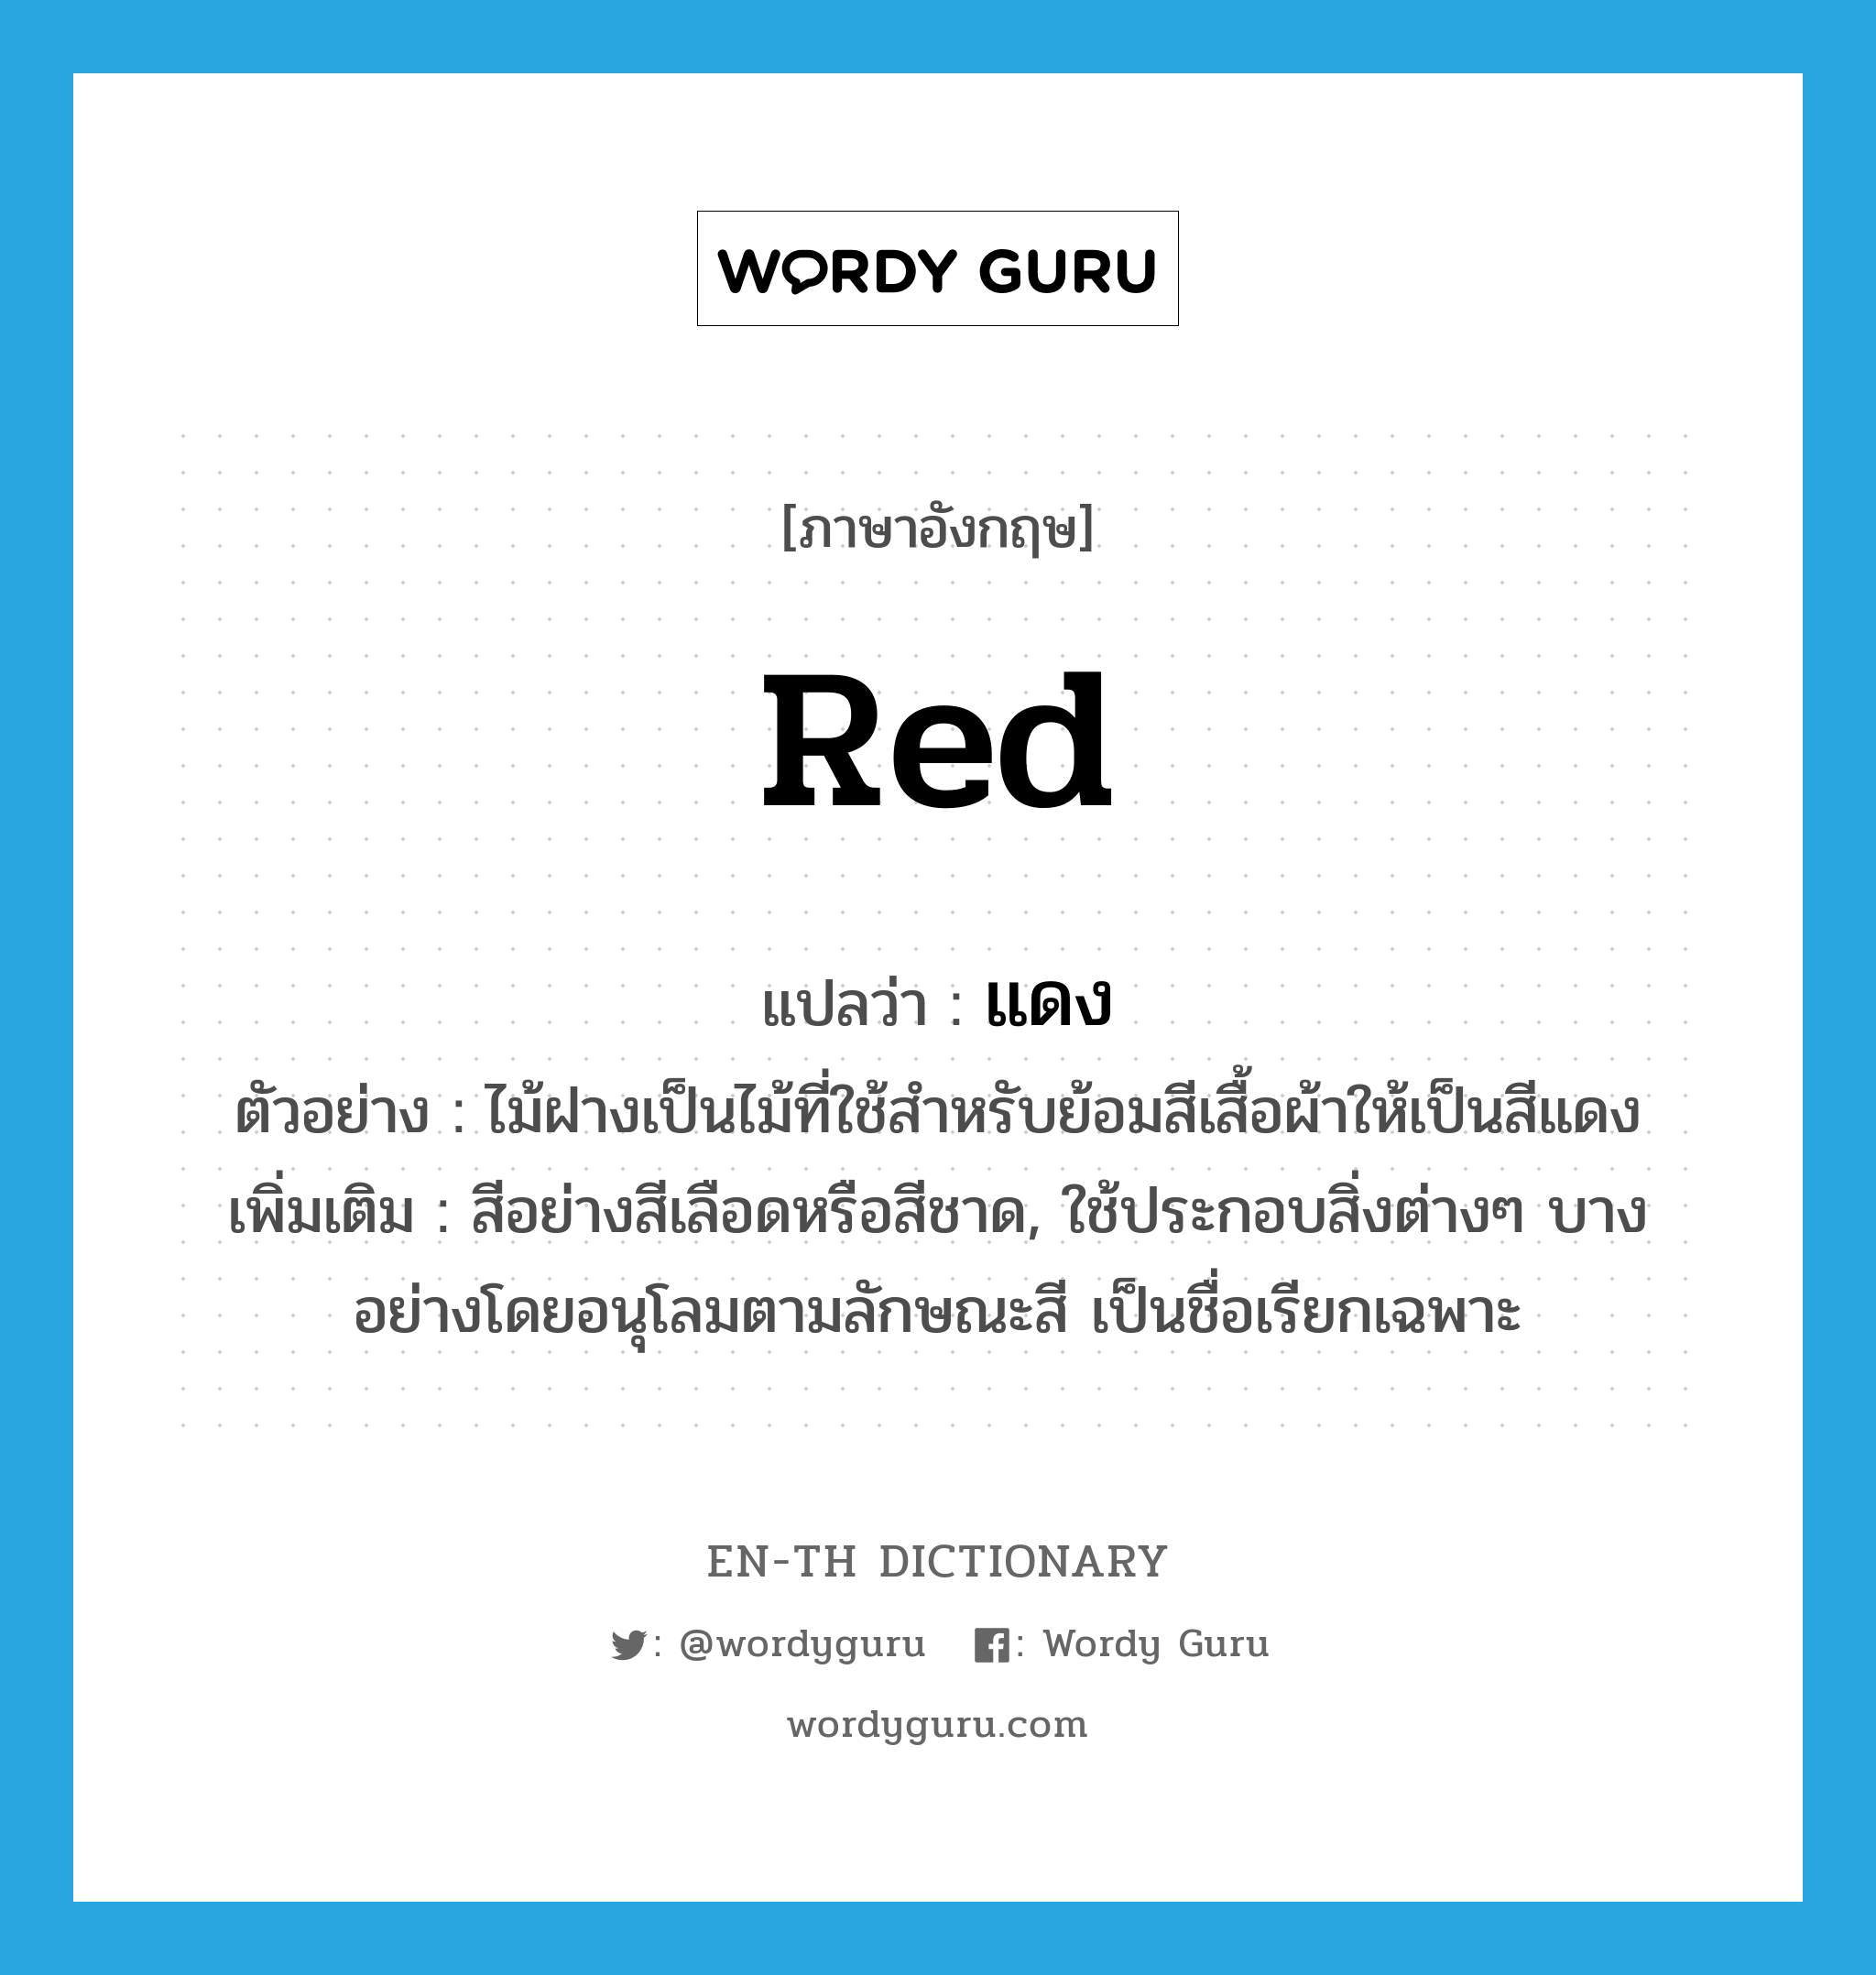 แดง ภาษาอังกฤษ?, คำศัพท์ภาษาอังกฤษ แดง แปลว่า red ประเภท N ตัวอย่าง ไม้ฝางเป็นไม้ที่ใช้สำหรับย้อมสีเสื้อผ้าให้เป็นสีแดง เพิ่มเติม สีอย่างสีเลือดหรือสีชาด, ใช้ประกอบสิ่งต่างๆ บางอย่างโดยอนุโลมตามลักษณะสี เป็นชื่อเรียกเฉพาะ หมวด N